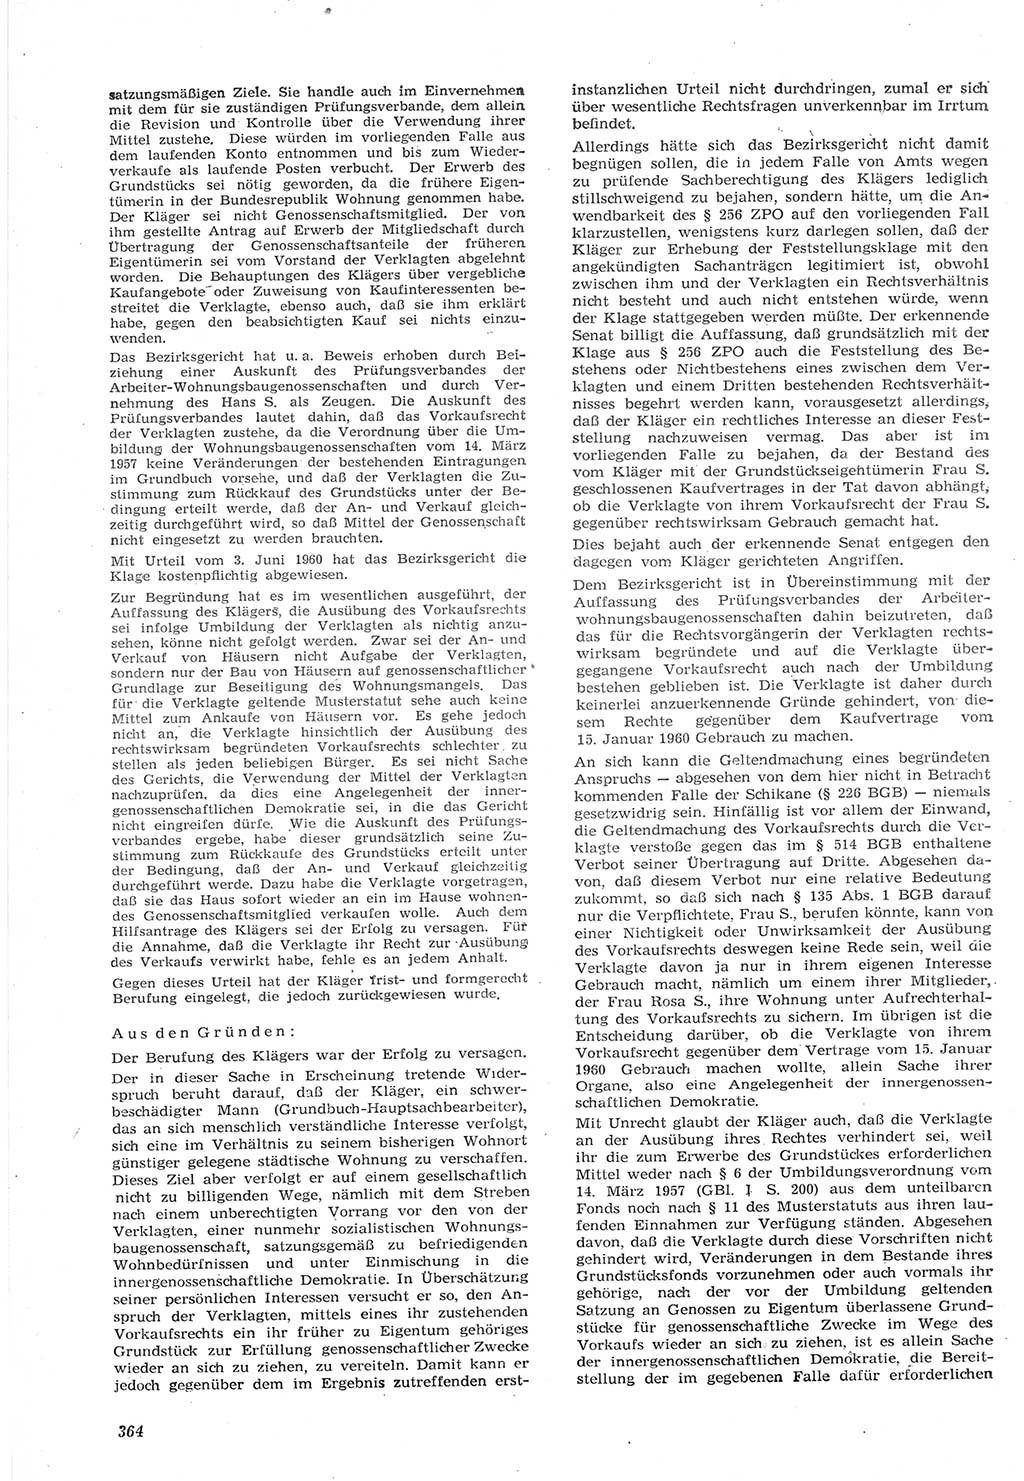 Neue Justiz (NJ), Zeitschrift für Recht und Rechtswissenschaft [Deutsche Demokratische Republik (DDR)], 15. Jahrgang 1961, Seite 364 (NJ DDR 1961, S. 364)